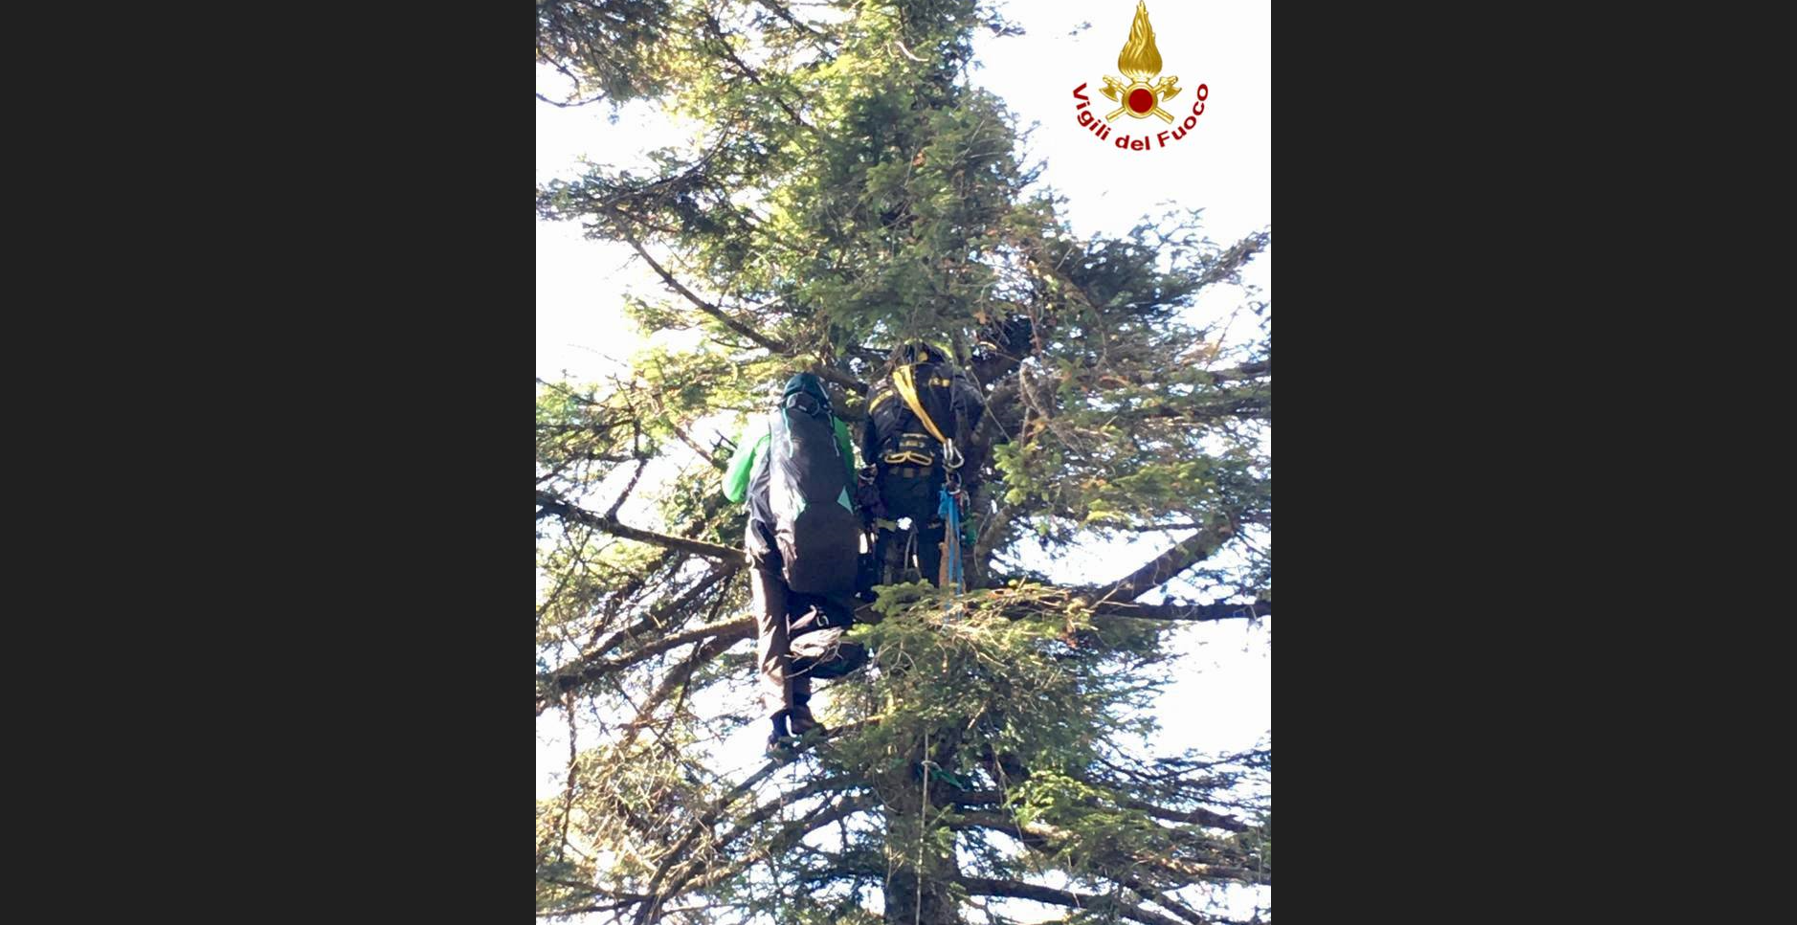 Atterraggio di emergenza con il parapendio, 64enne rimane bloccato a 15 metri tra i rami di un albero sul monte Vulture. Intervento dei Vigili del fuoco